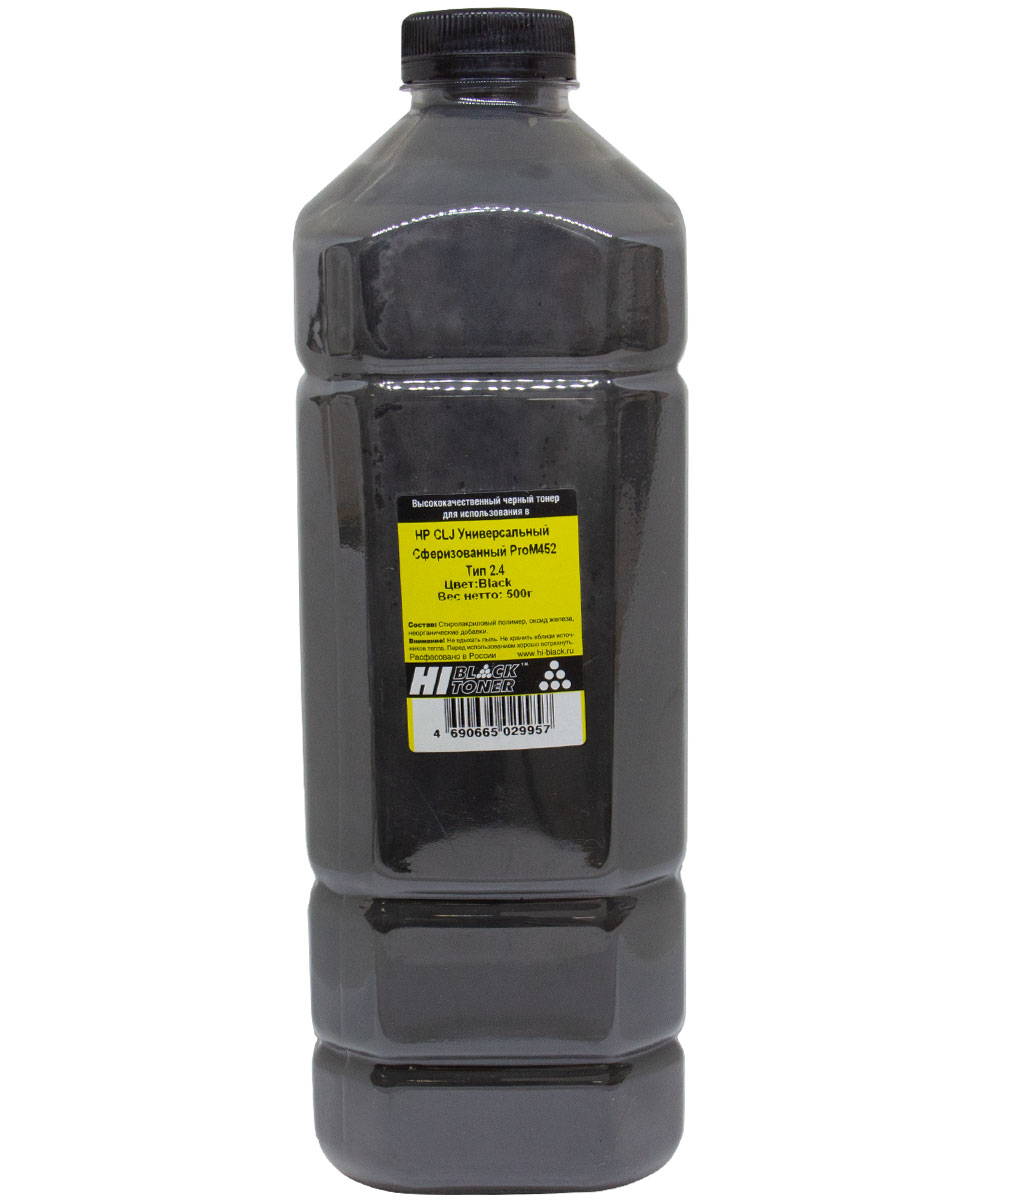 Тонер универсальный Hi-Black (CF410A) для HP CLJ Pro M452, Тип 2.4, сферизованный, чёрный (500 гр.)